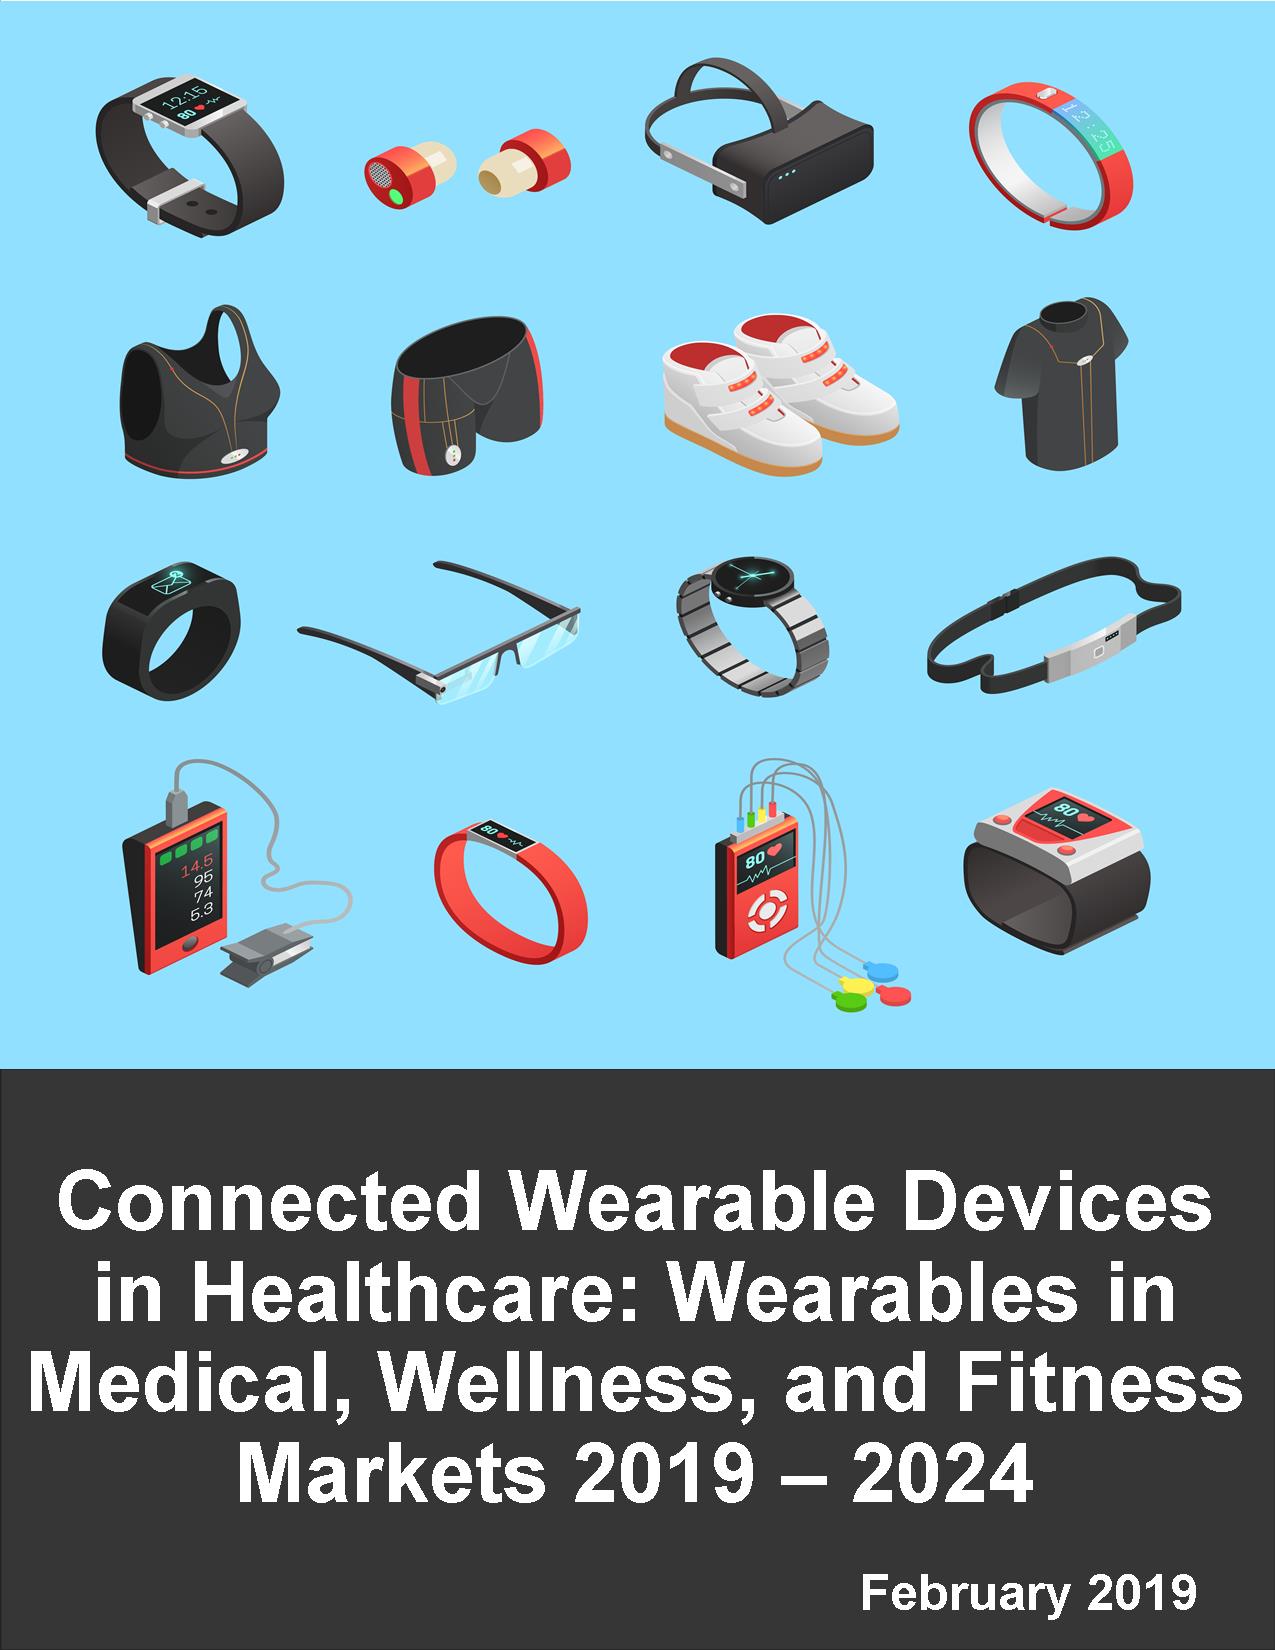 Wearable technologies